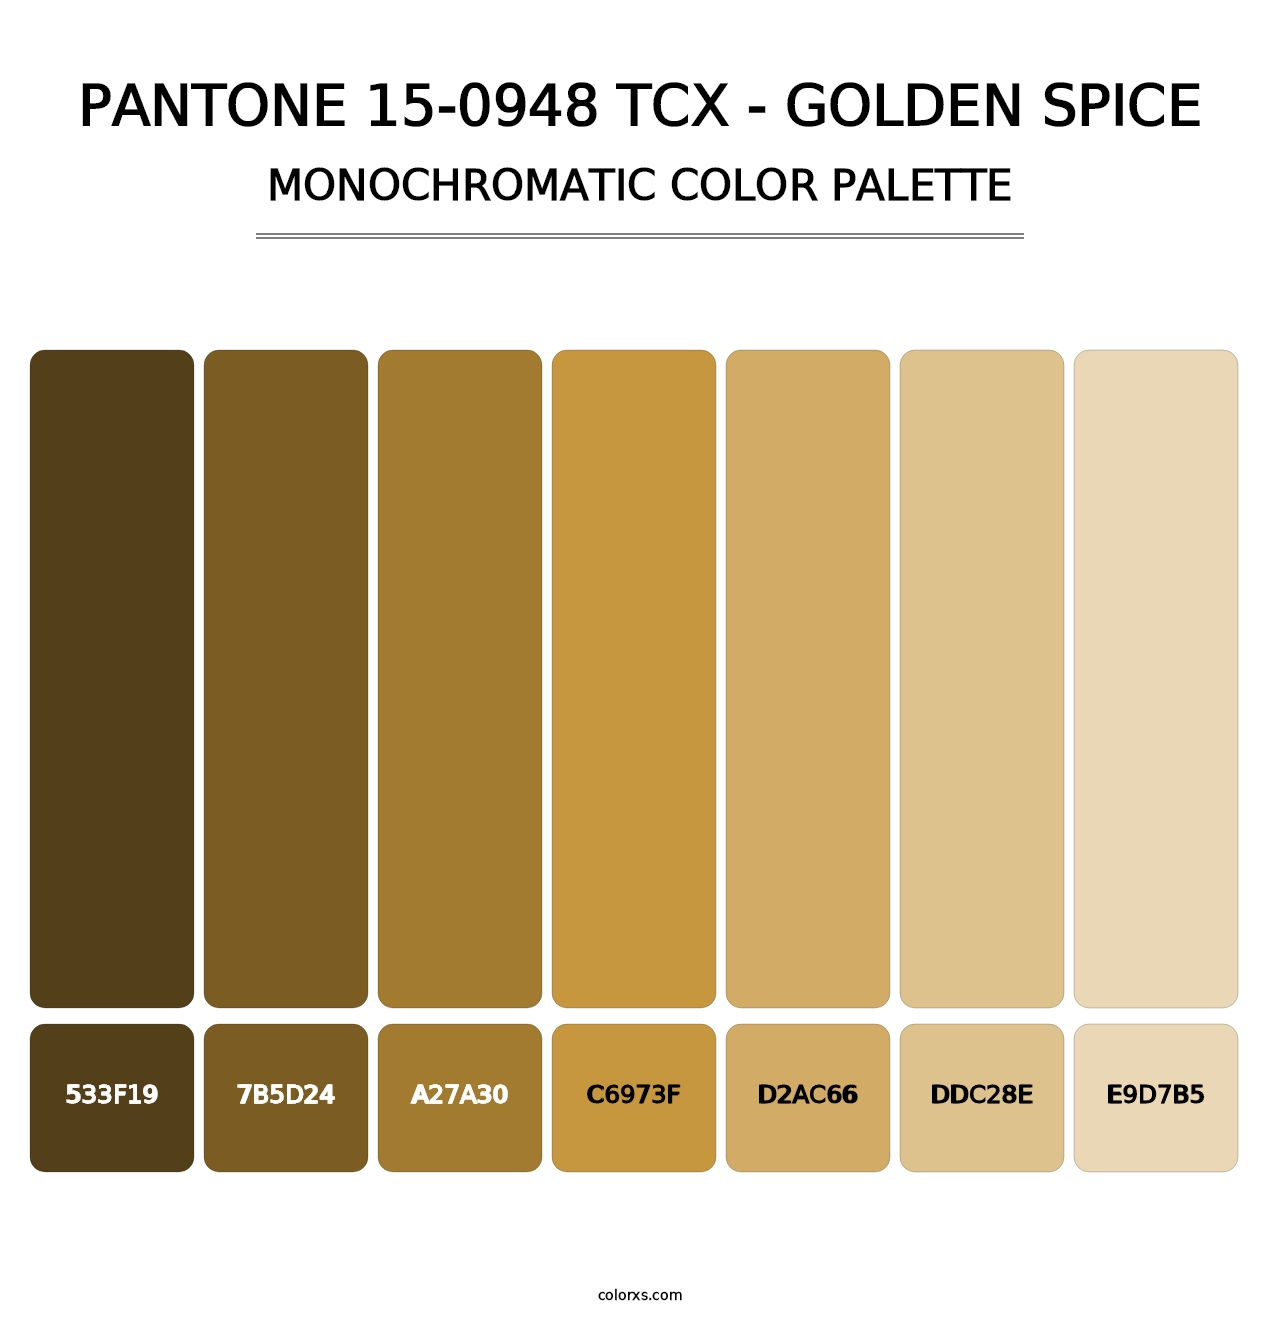 PANTONE 15-0948 TCX - Golden Spice - Monochromatic Color Palette